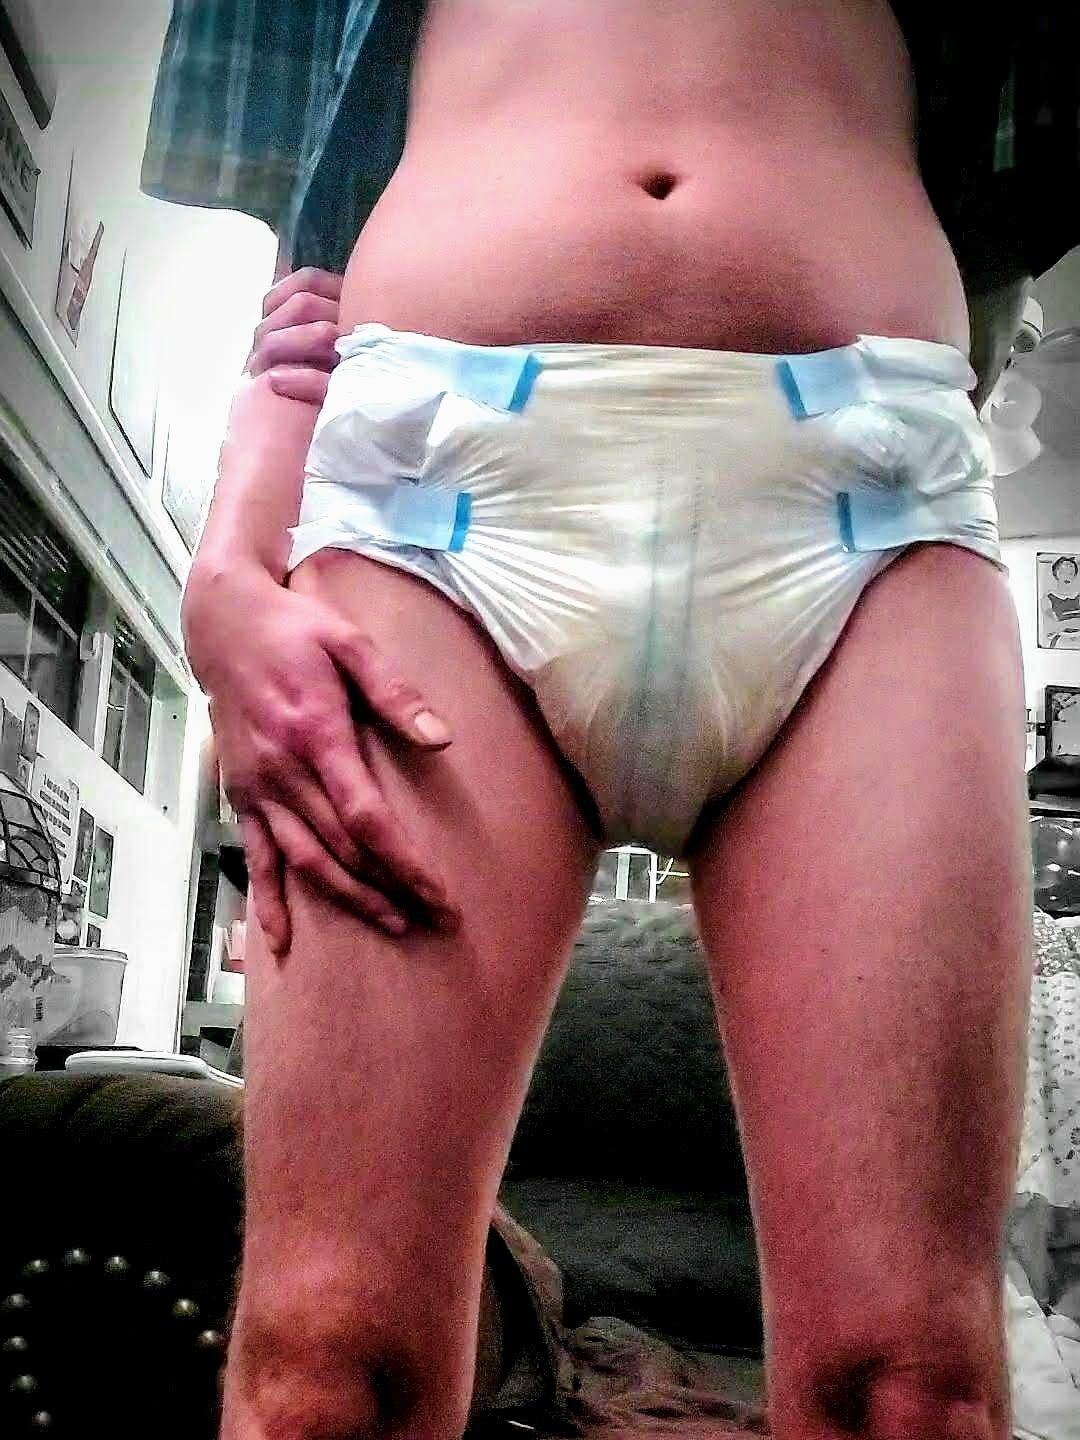 diaper bonage fetish #15